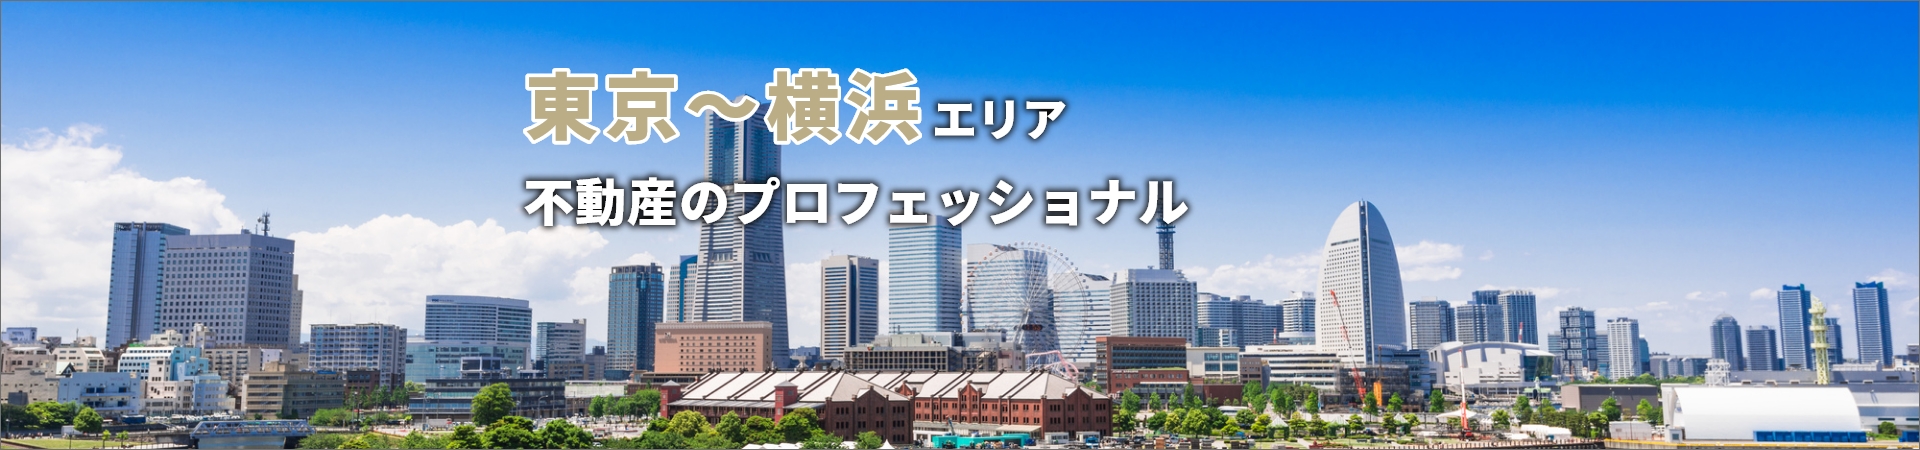 東京横浜エリア不動産のプロフェッショナル